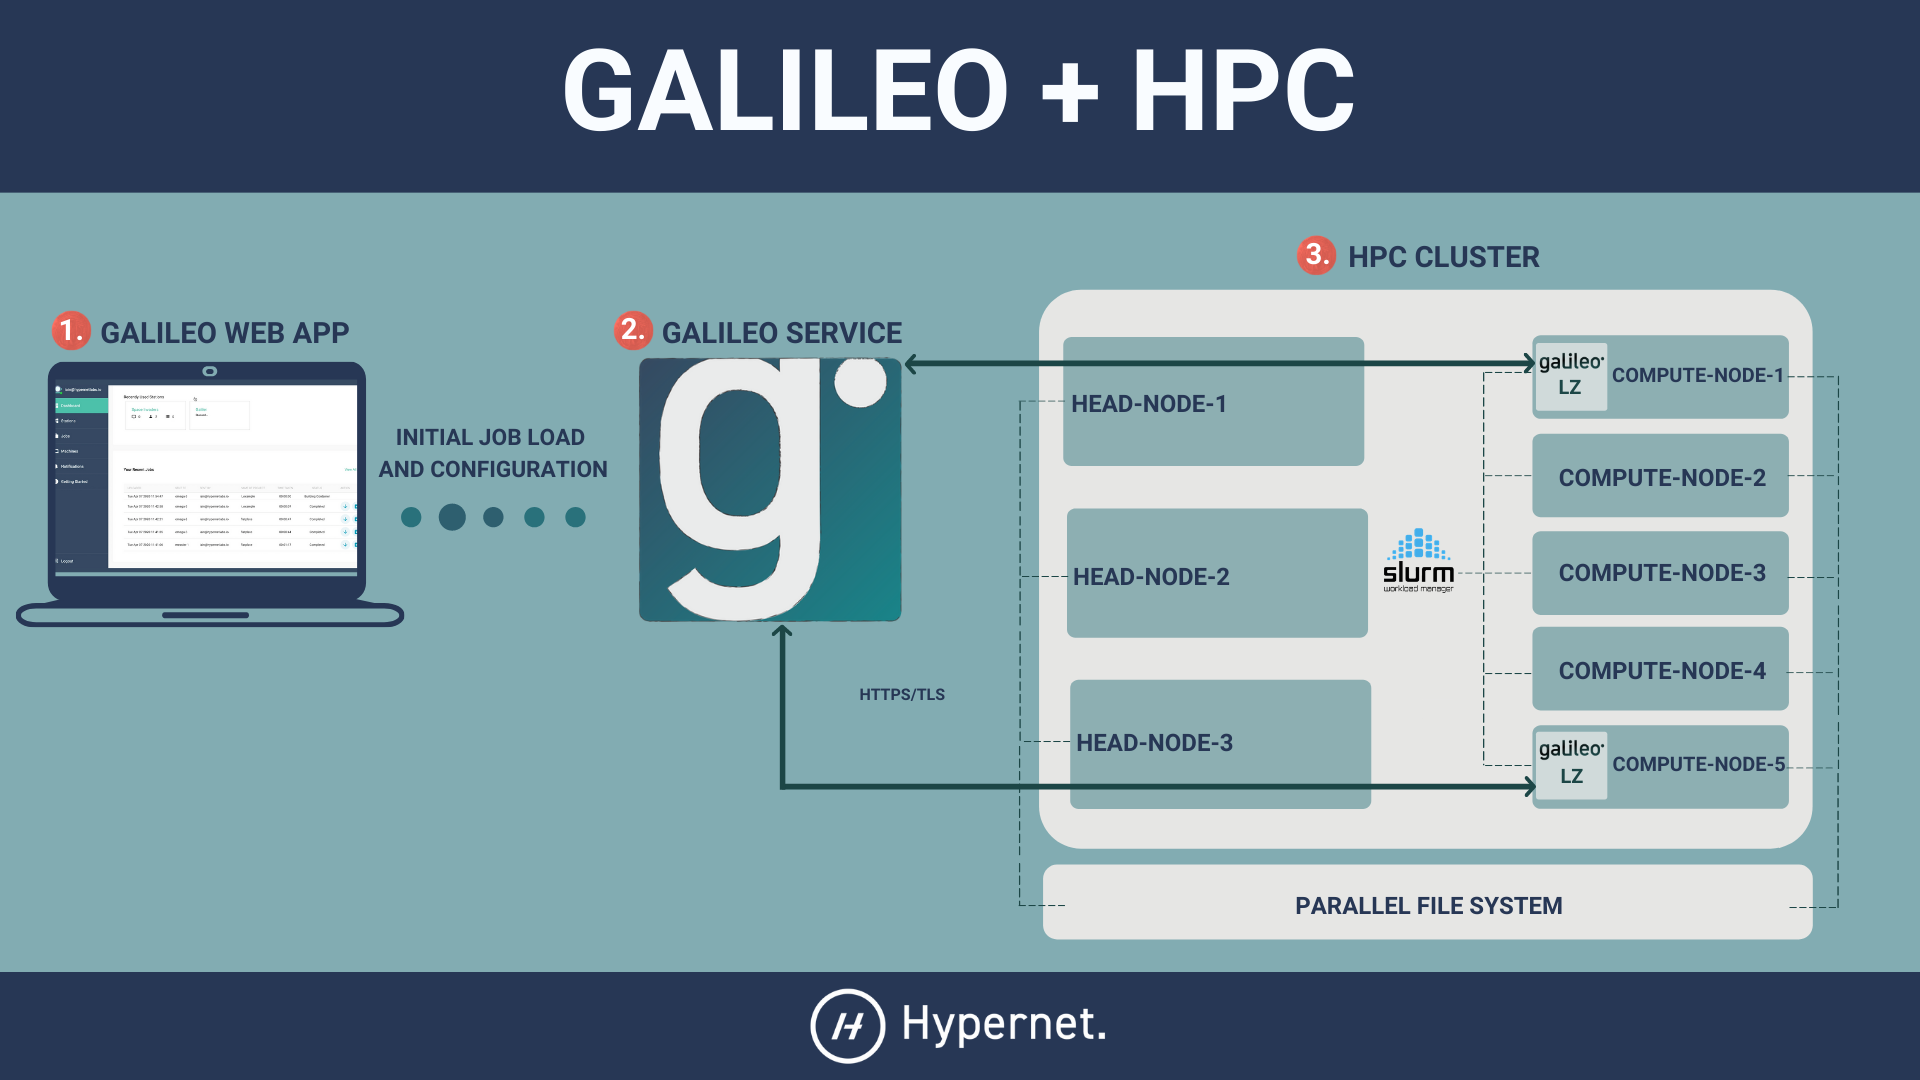 _images/Galileo_HPC_pilot.png